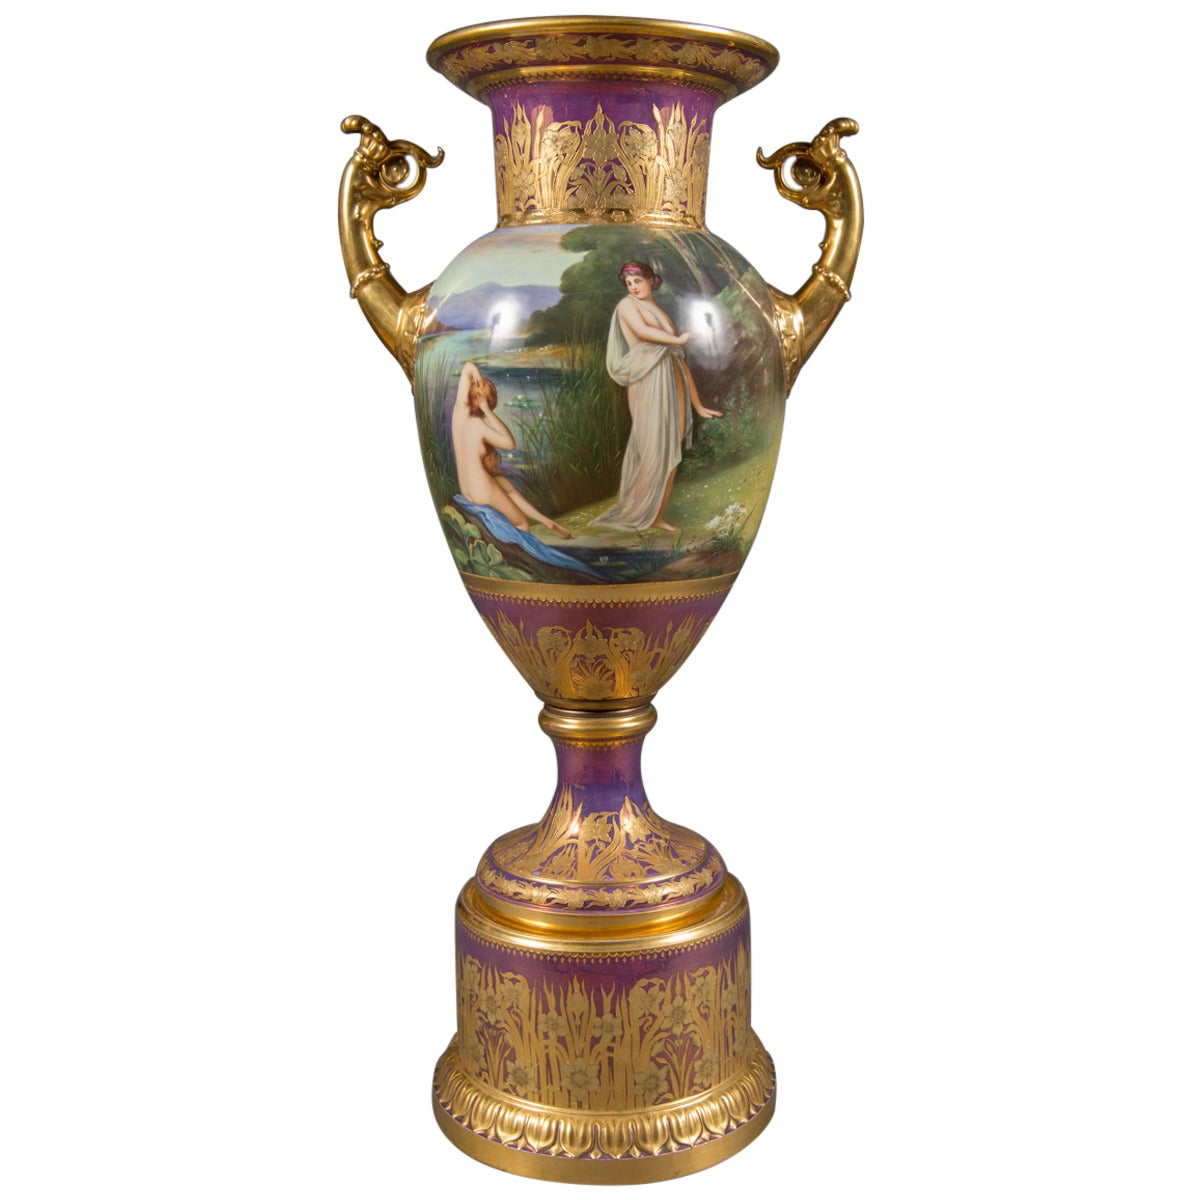 Grand vase autrichien ancien de style royal de Vienne peint en iridescent